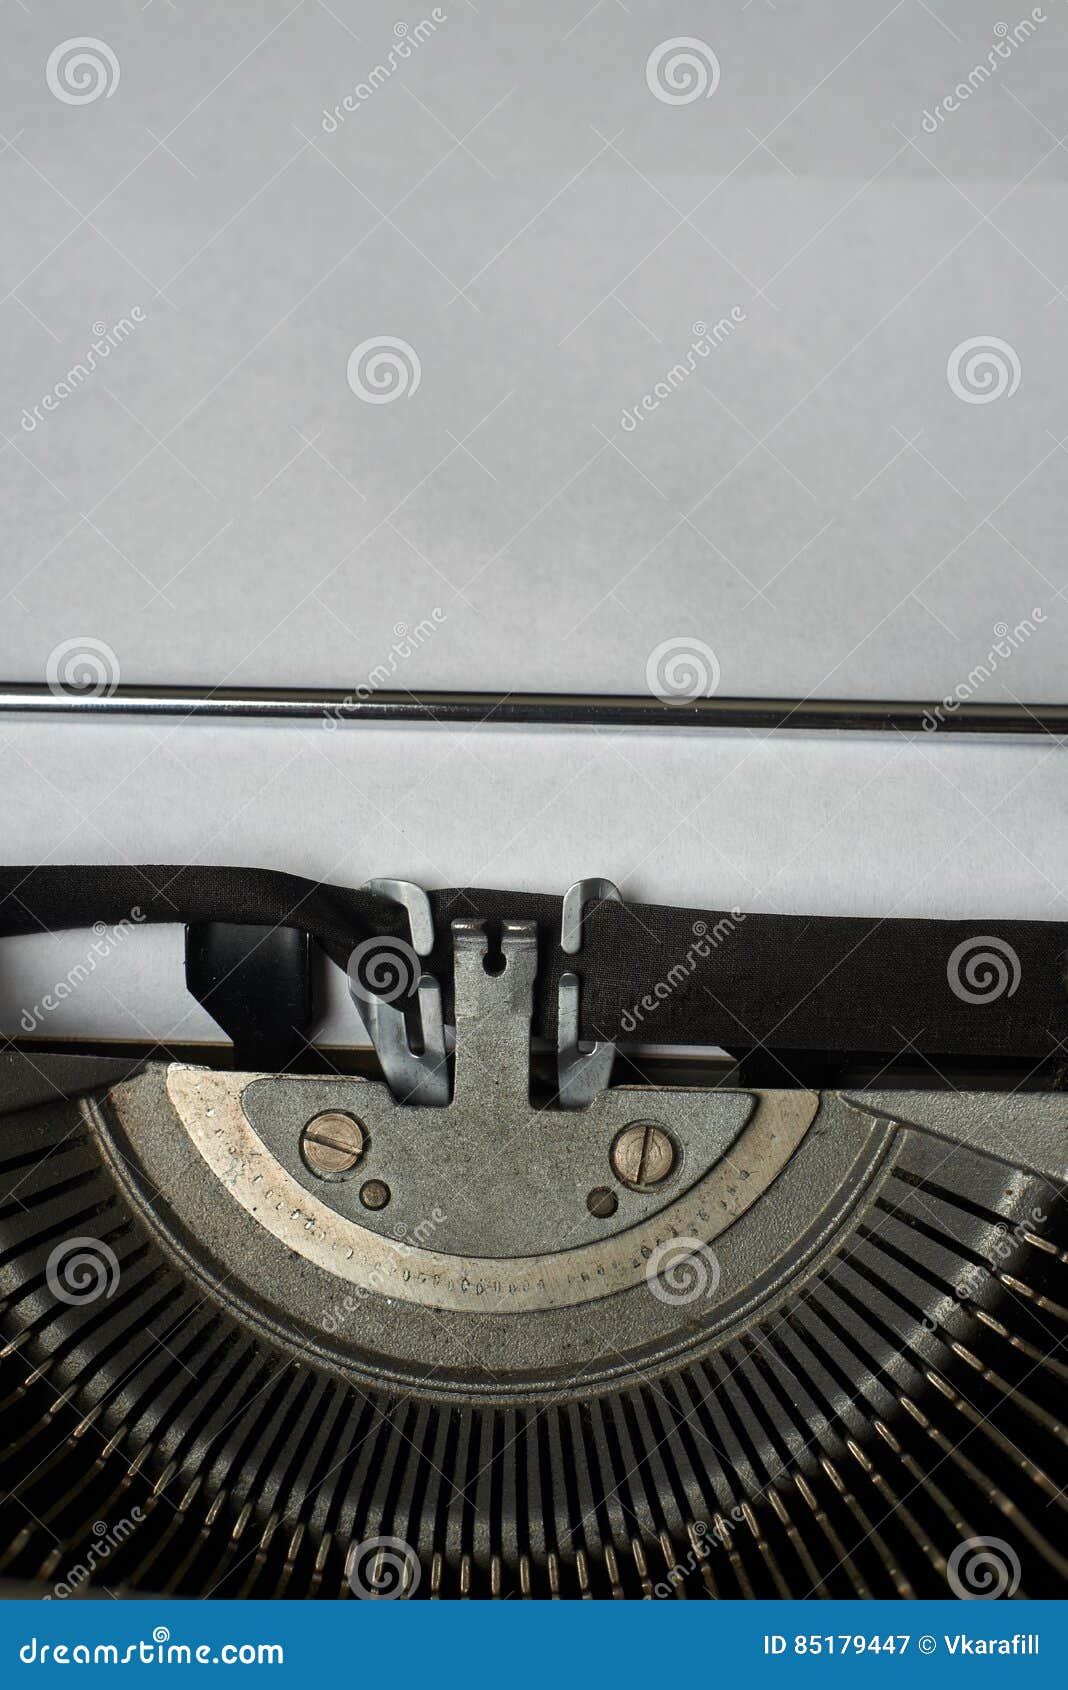 Original & Vintage Typewriter A4 Typing Paper